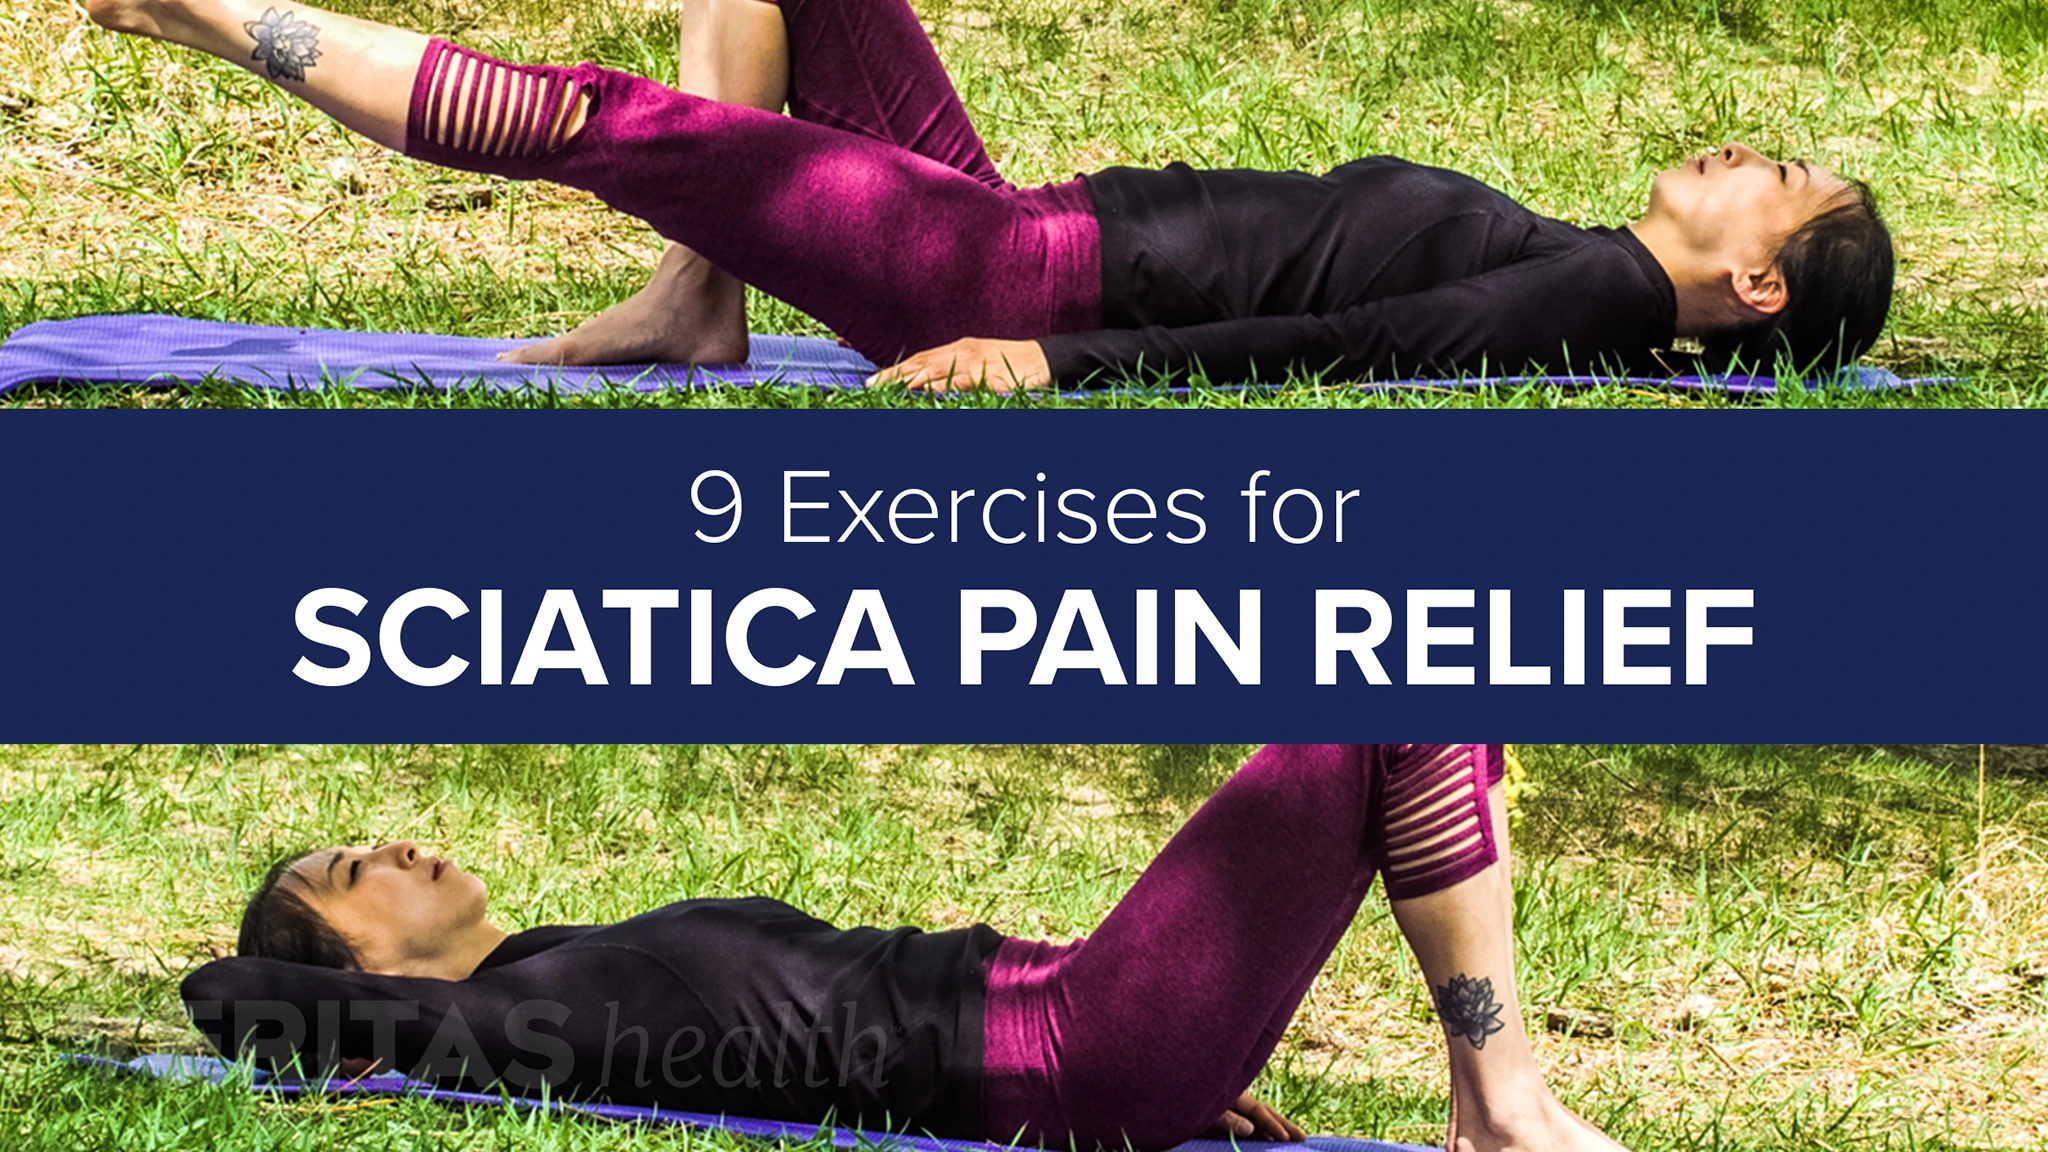 Slideshow: 9 Exercises for Sciatica Pain Relief